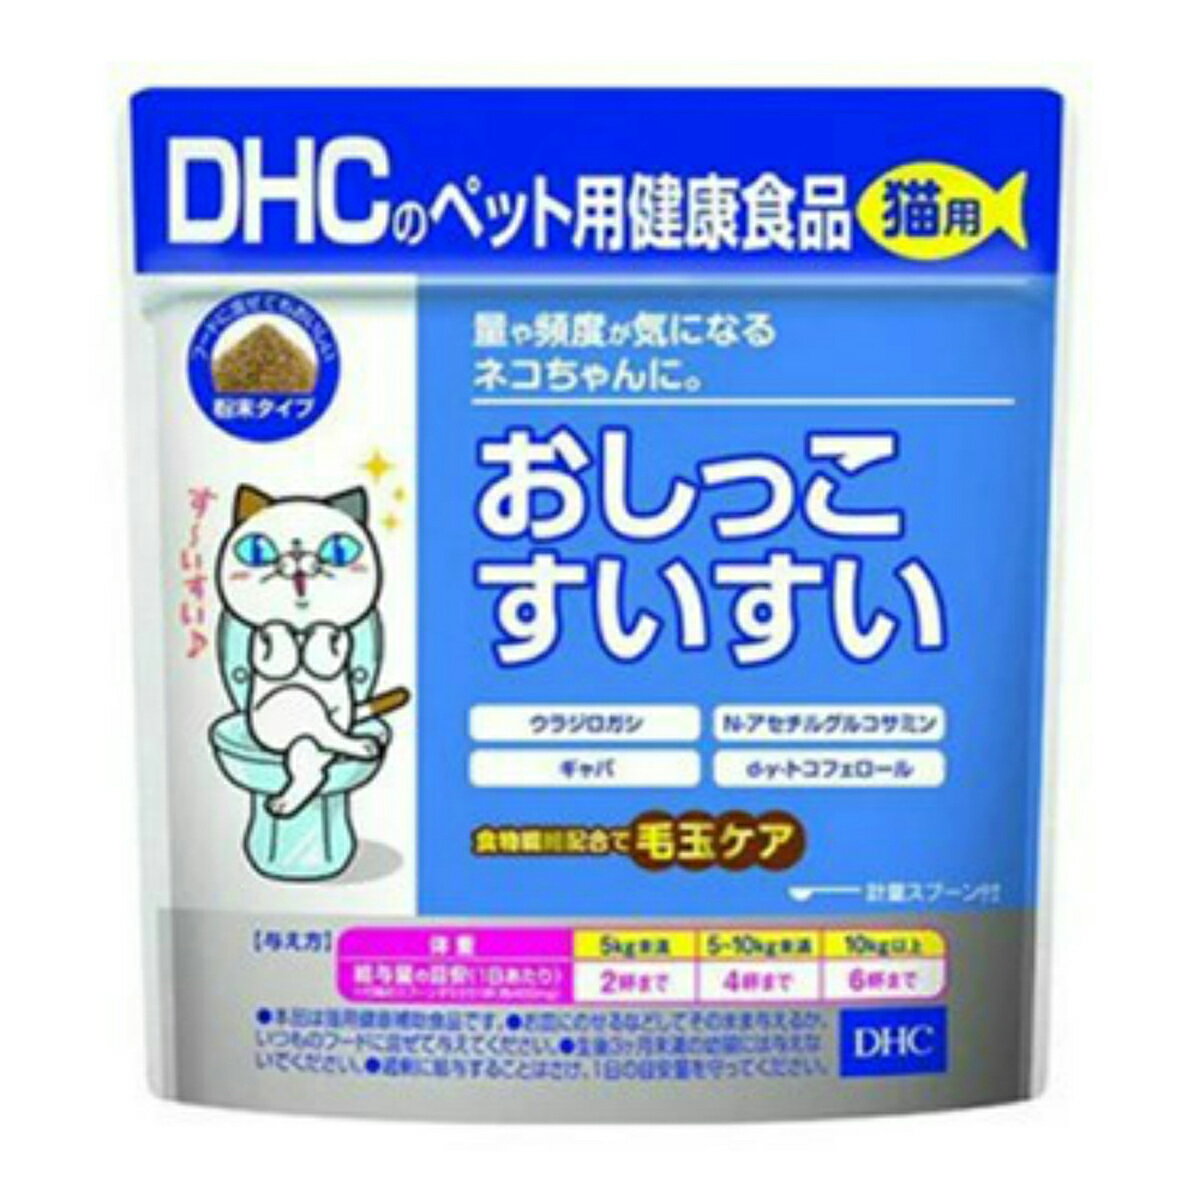 【×3個 配送おまかせ送料込】DHC ペット用健康食品 猫用 おしっこすいすい 粉末タイプ 50g 1